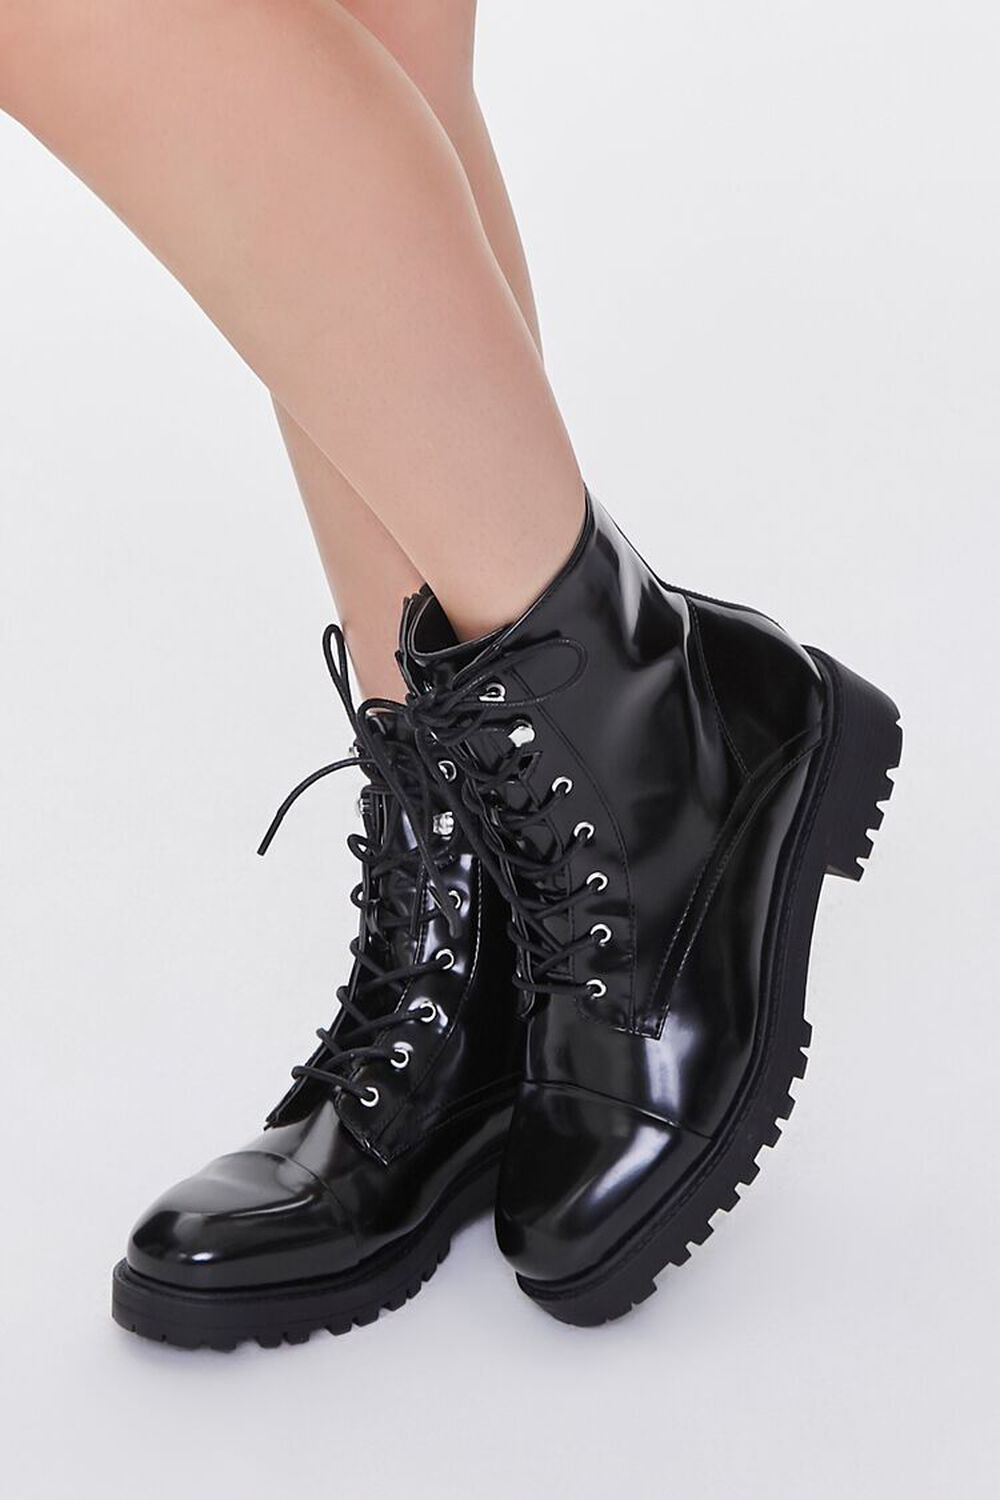 BLACK Faux Leather Combat Boots, image 1